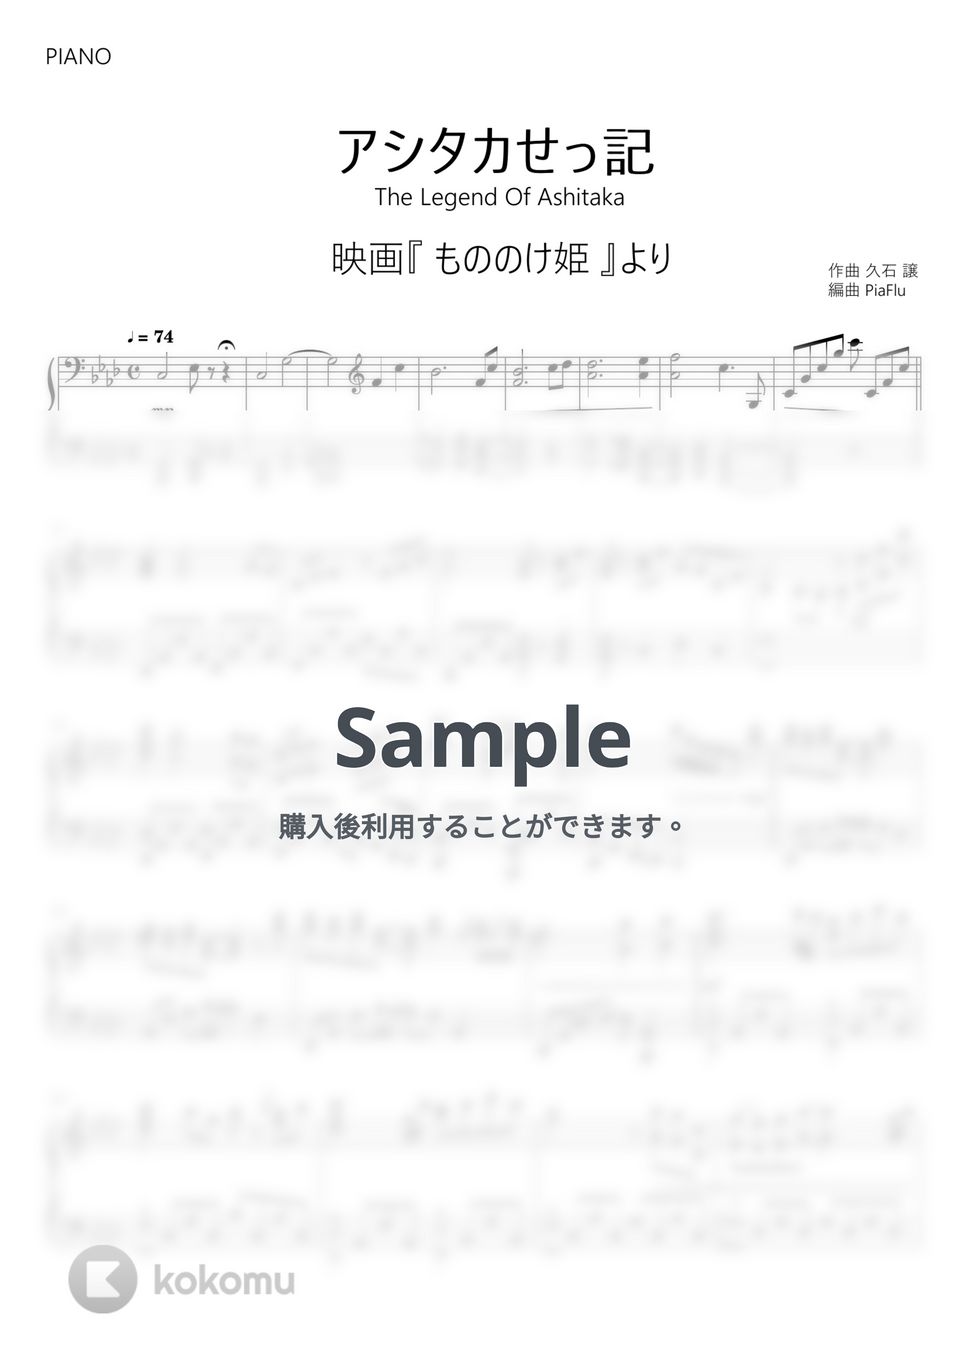 もののけ姫 - アシタカせっ記 (ピアノ) by PiaFlu